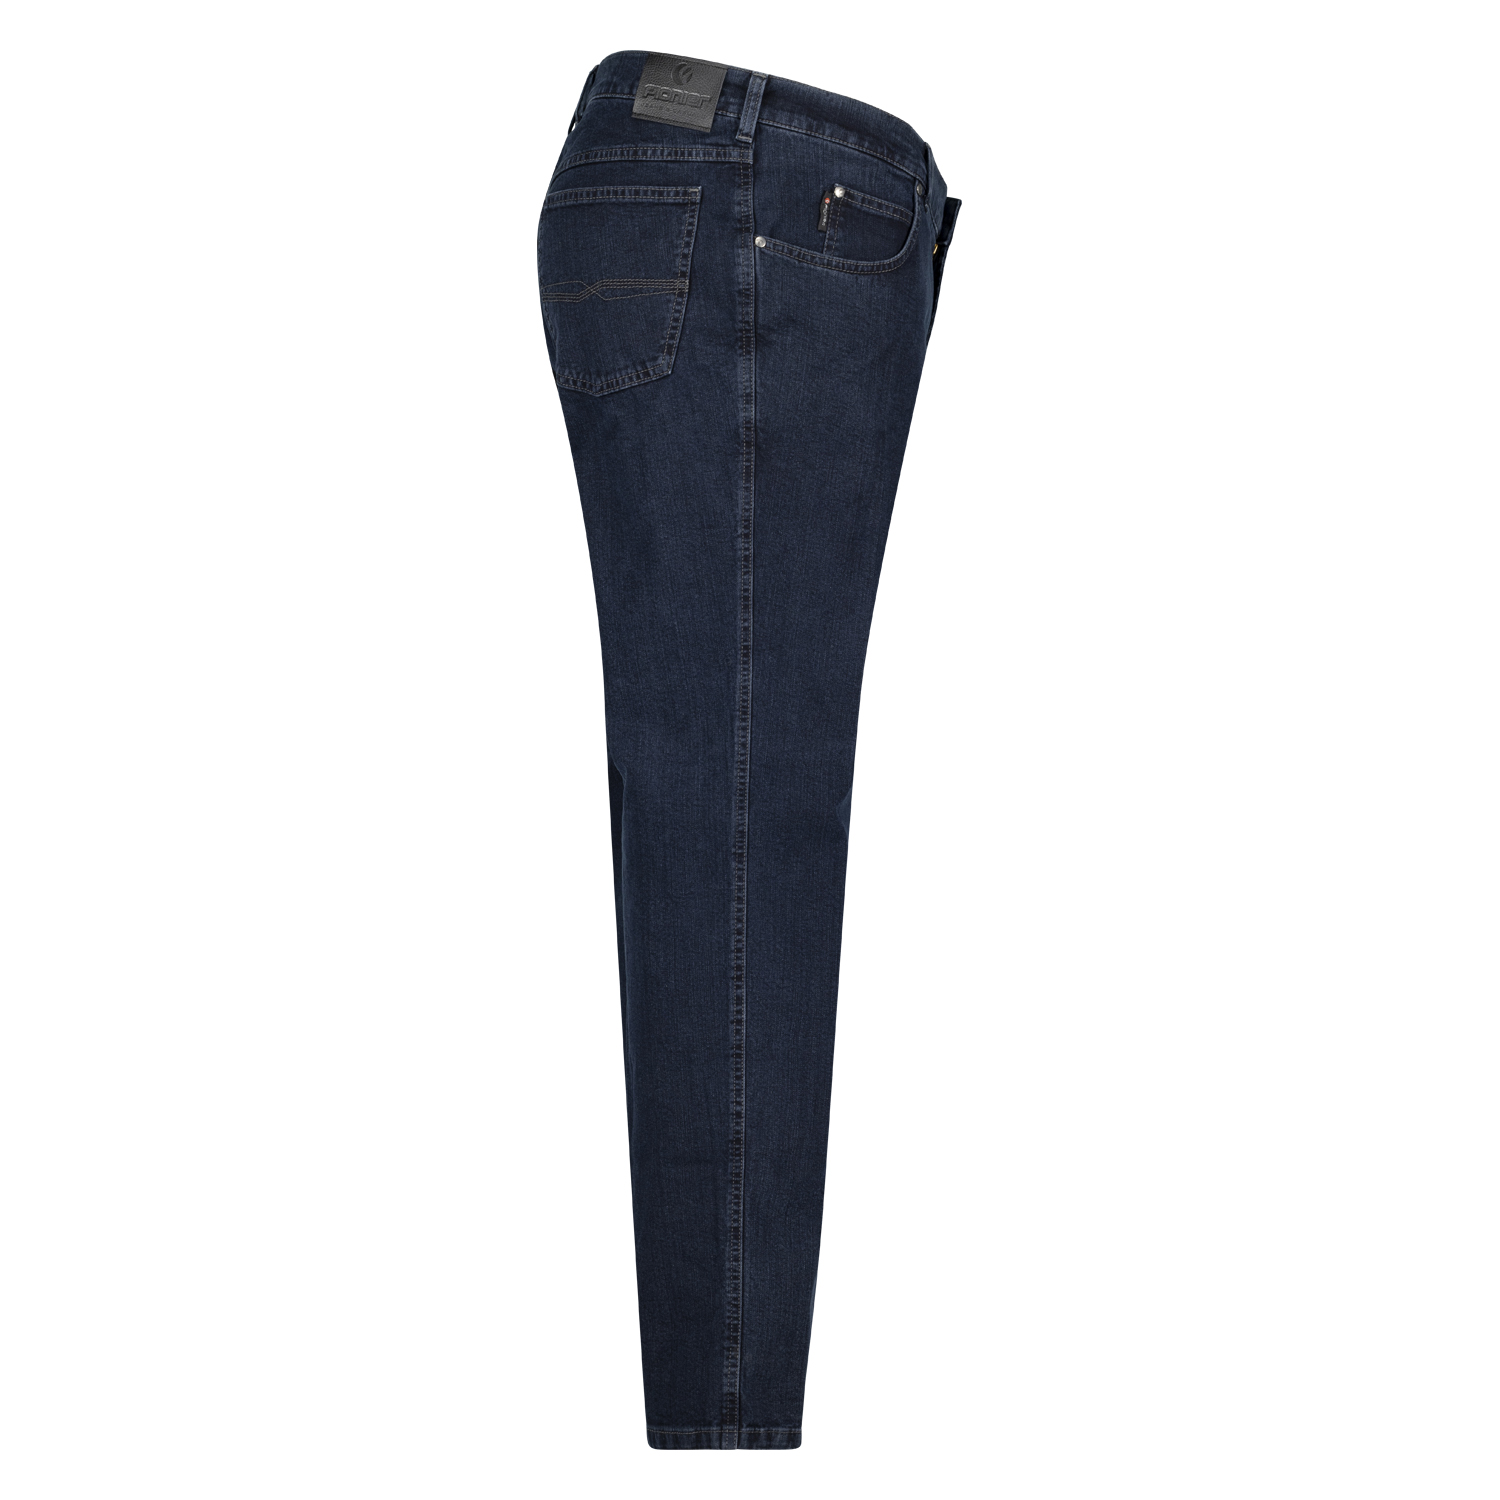 Five Pocket Jeans Modell "Peter" Pioneer in dark blue stonewash Normalgrößen 56 - 74